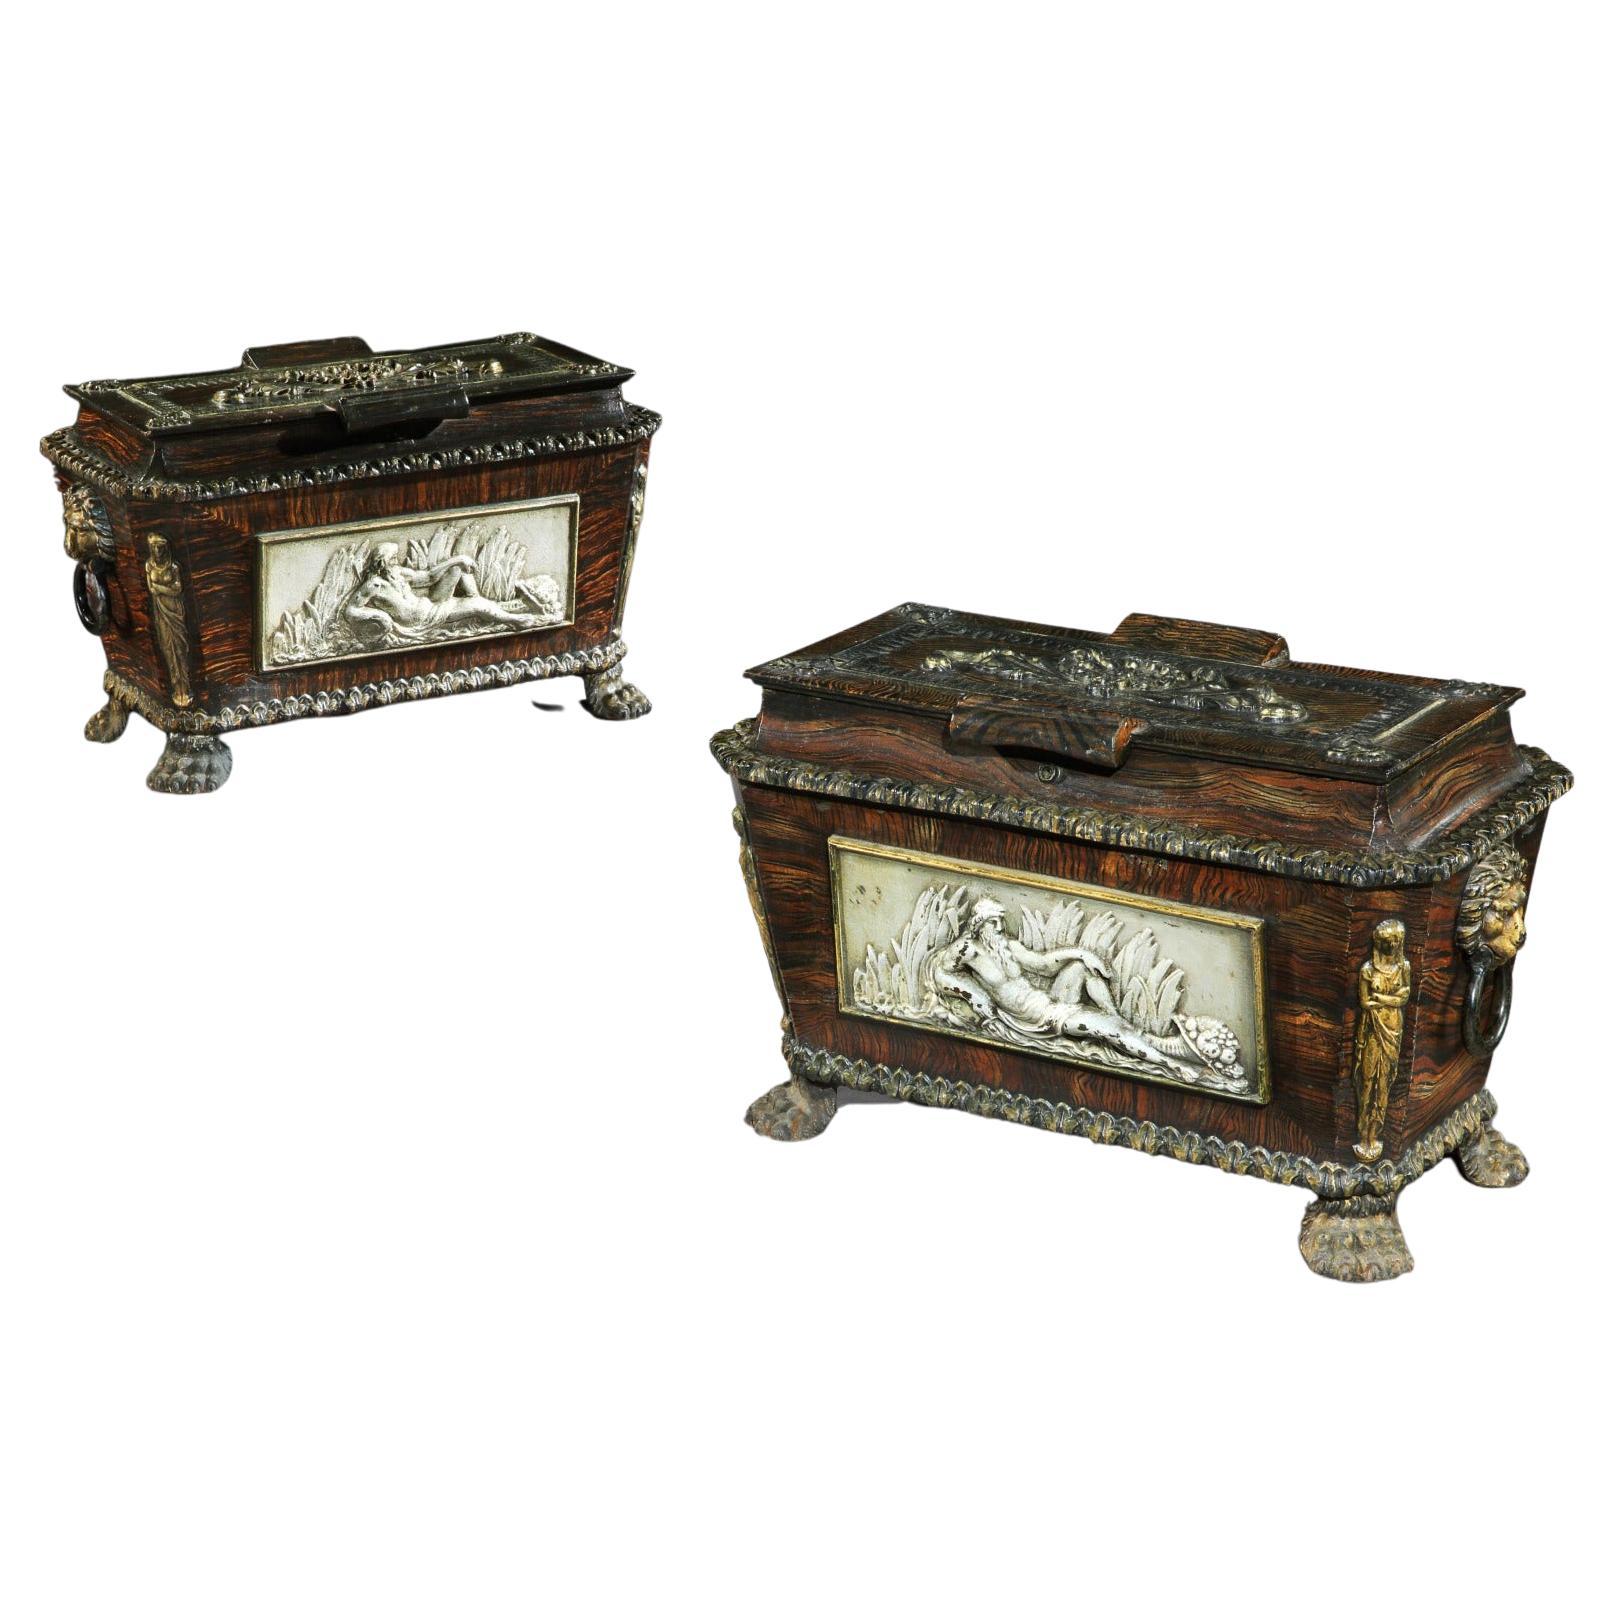 Äußerst seltenes Paar gusseiserner Sarkophag-Schatulle im Regency-Stil in Form einer starken Schachtel